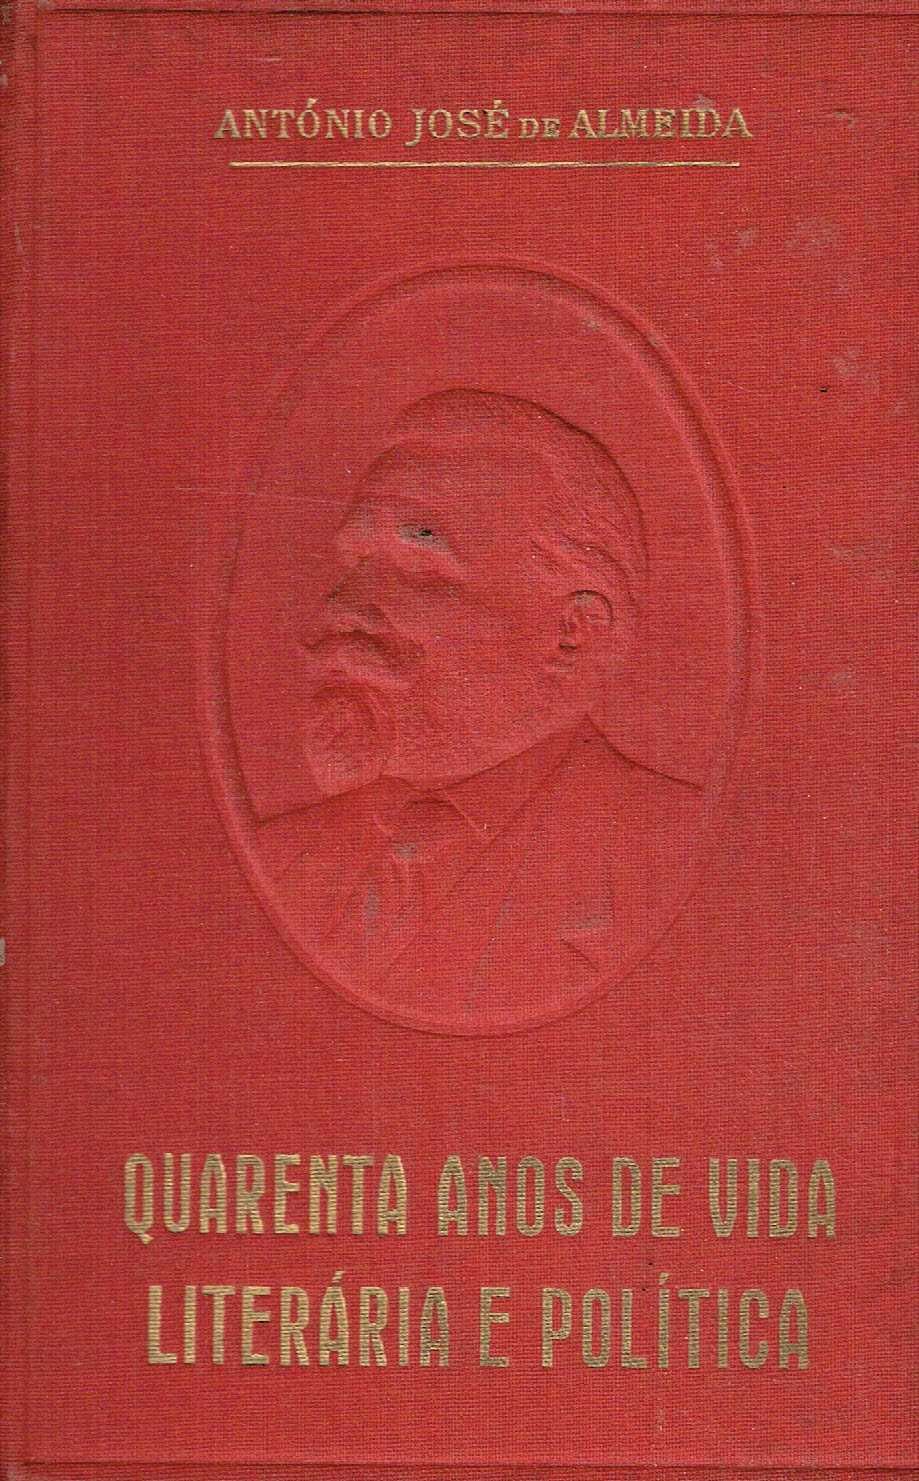 3921
Quarenta anos de vida literária e 
de A. José de Almeida.